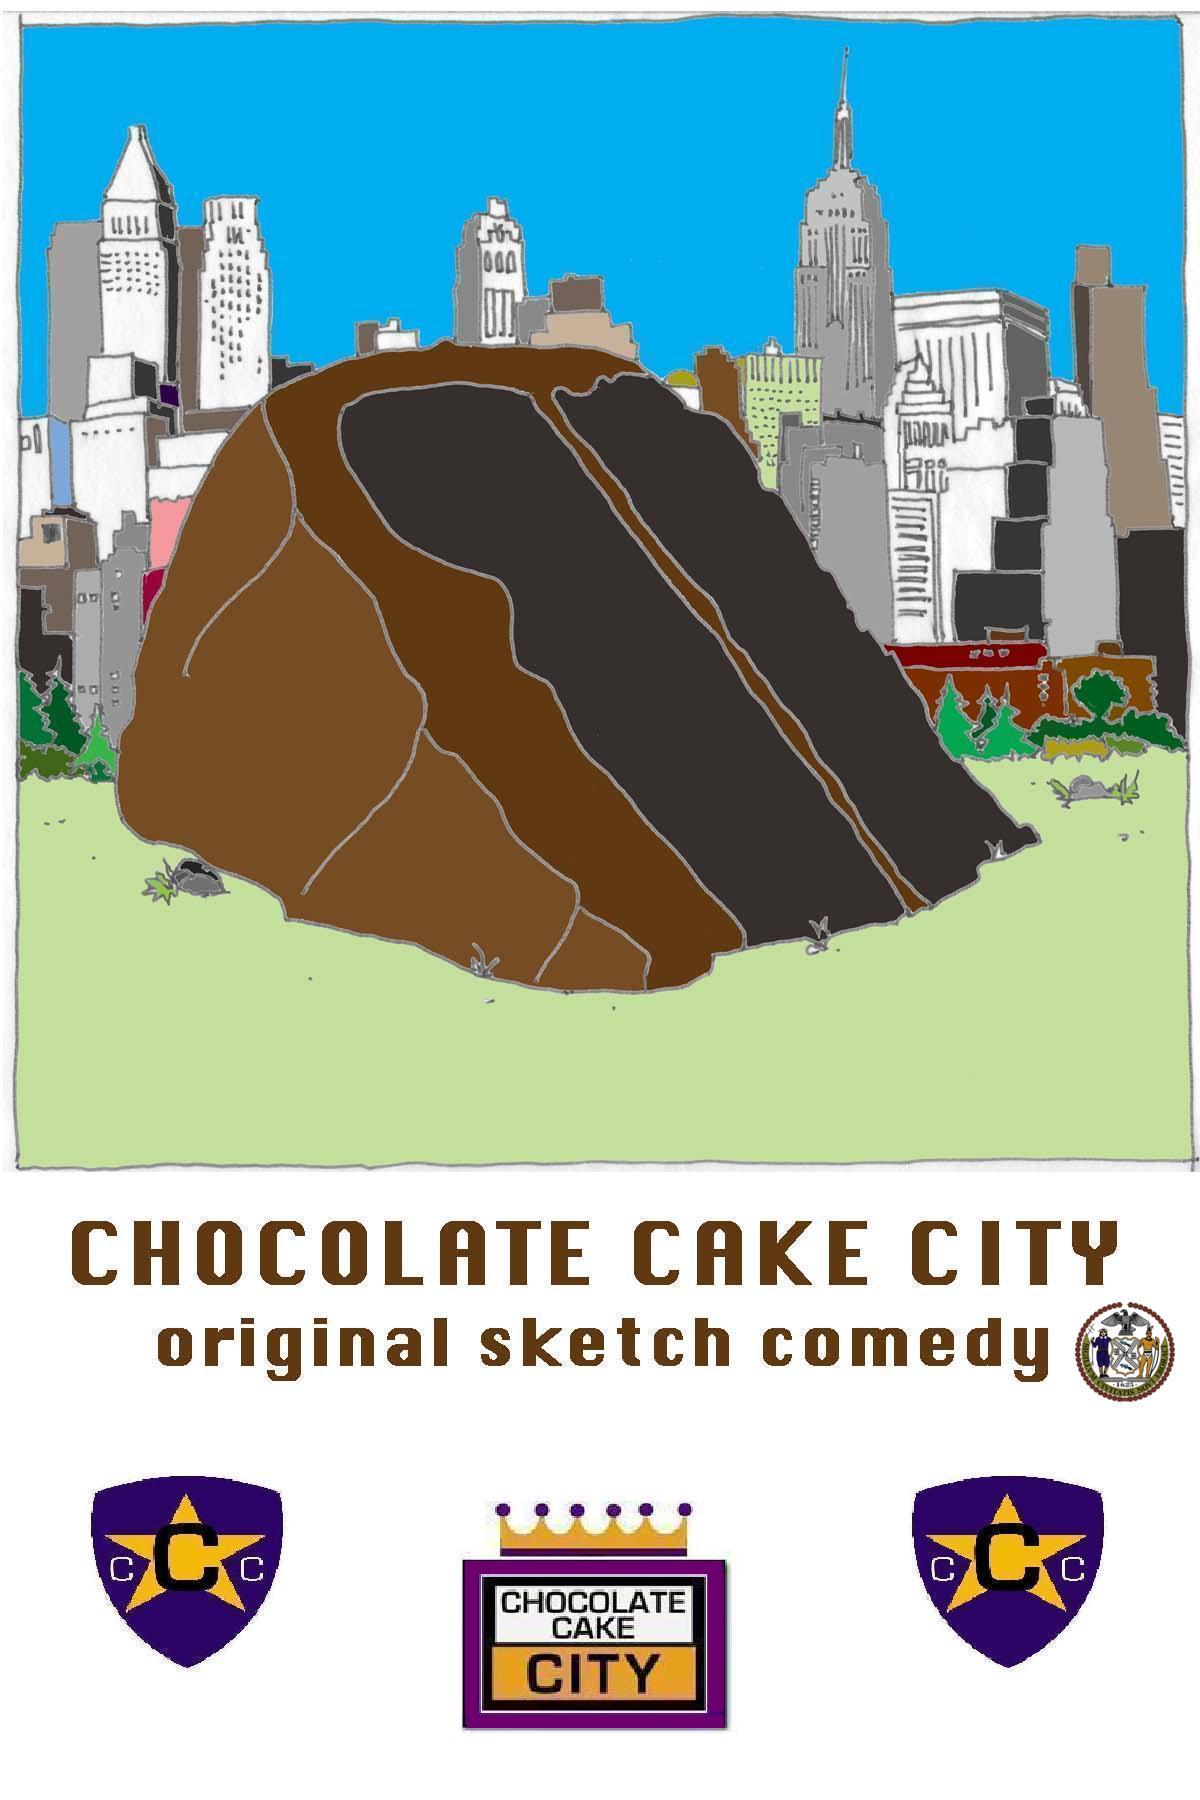 The Chocolate Cake City years